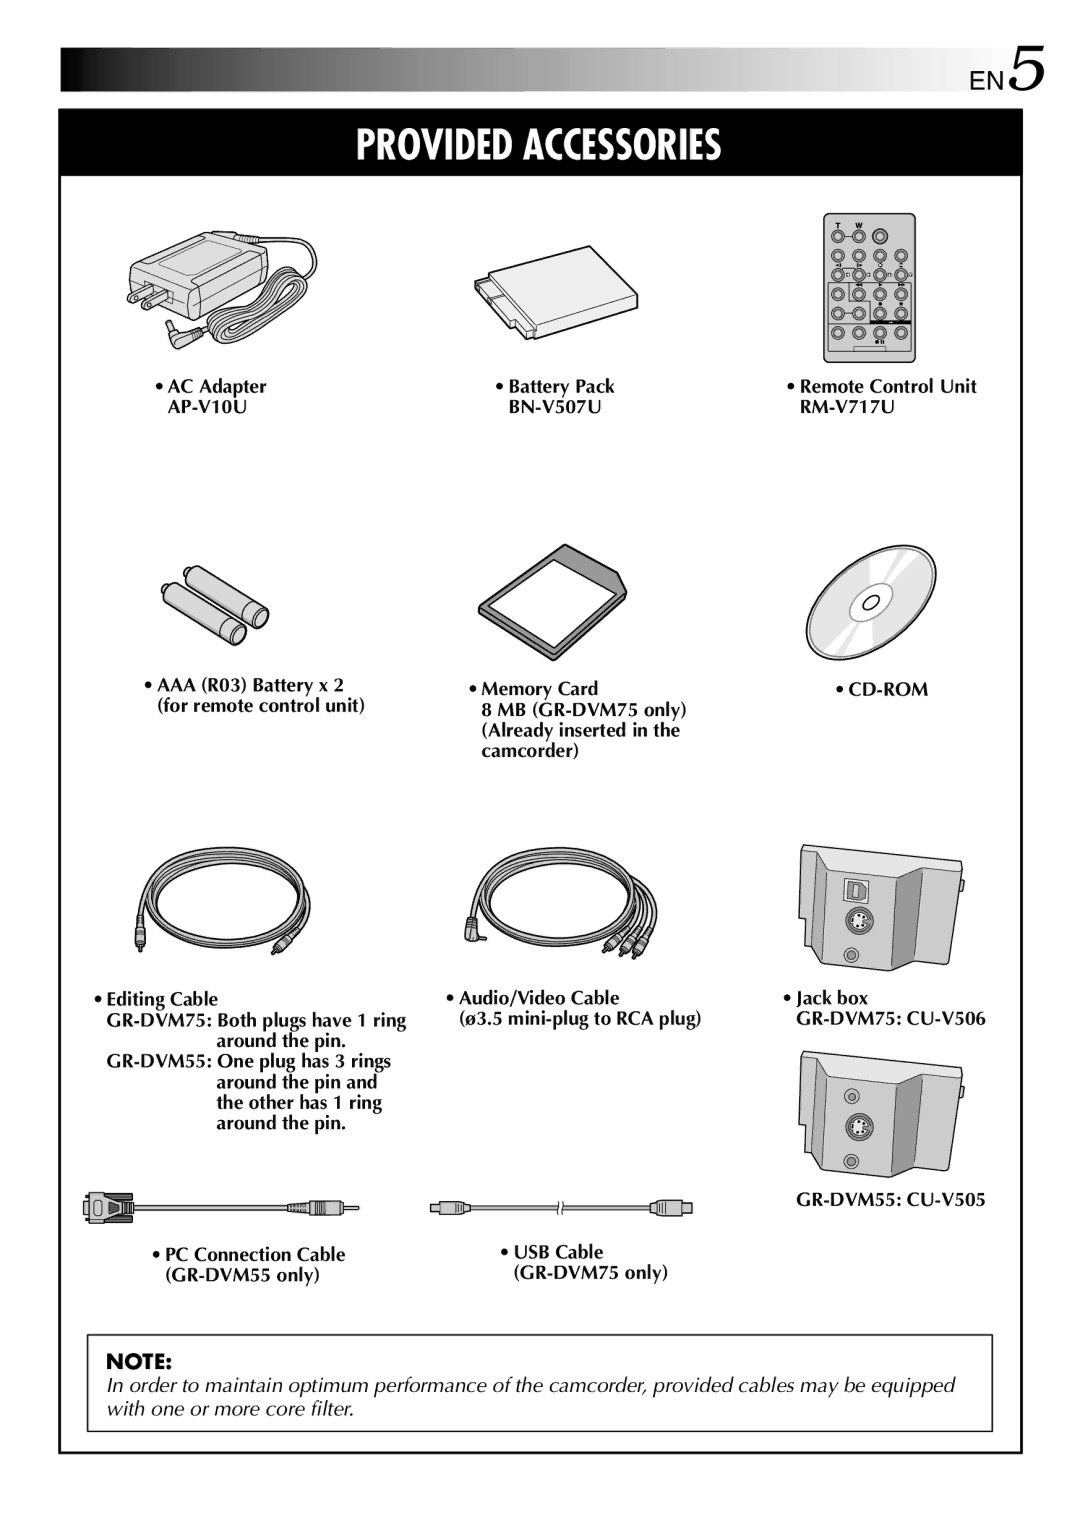 JVC specifications AC Adapter AP-V10U, RM-V717U, Memory Card, GR-DVM55 CU-V505 USB Cable GR-DVM75 only 